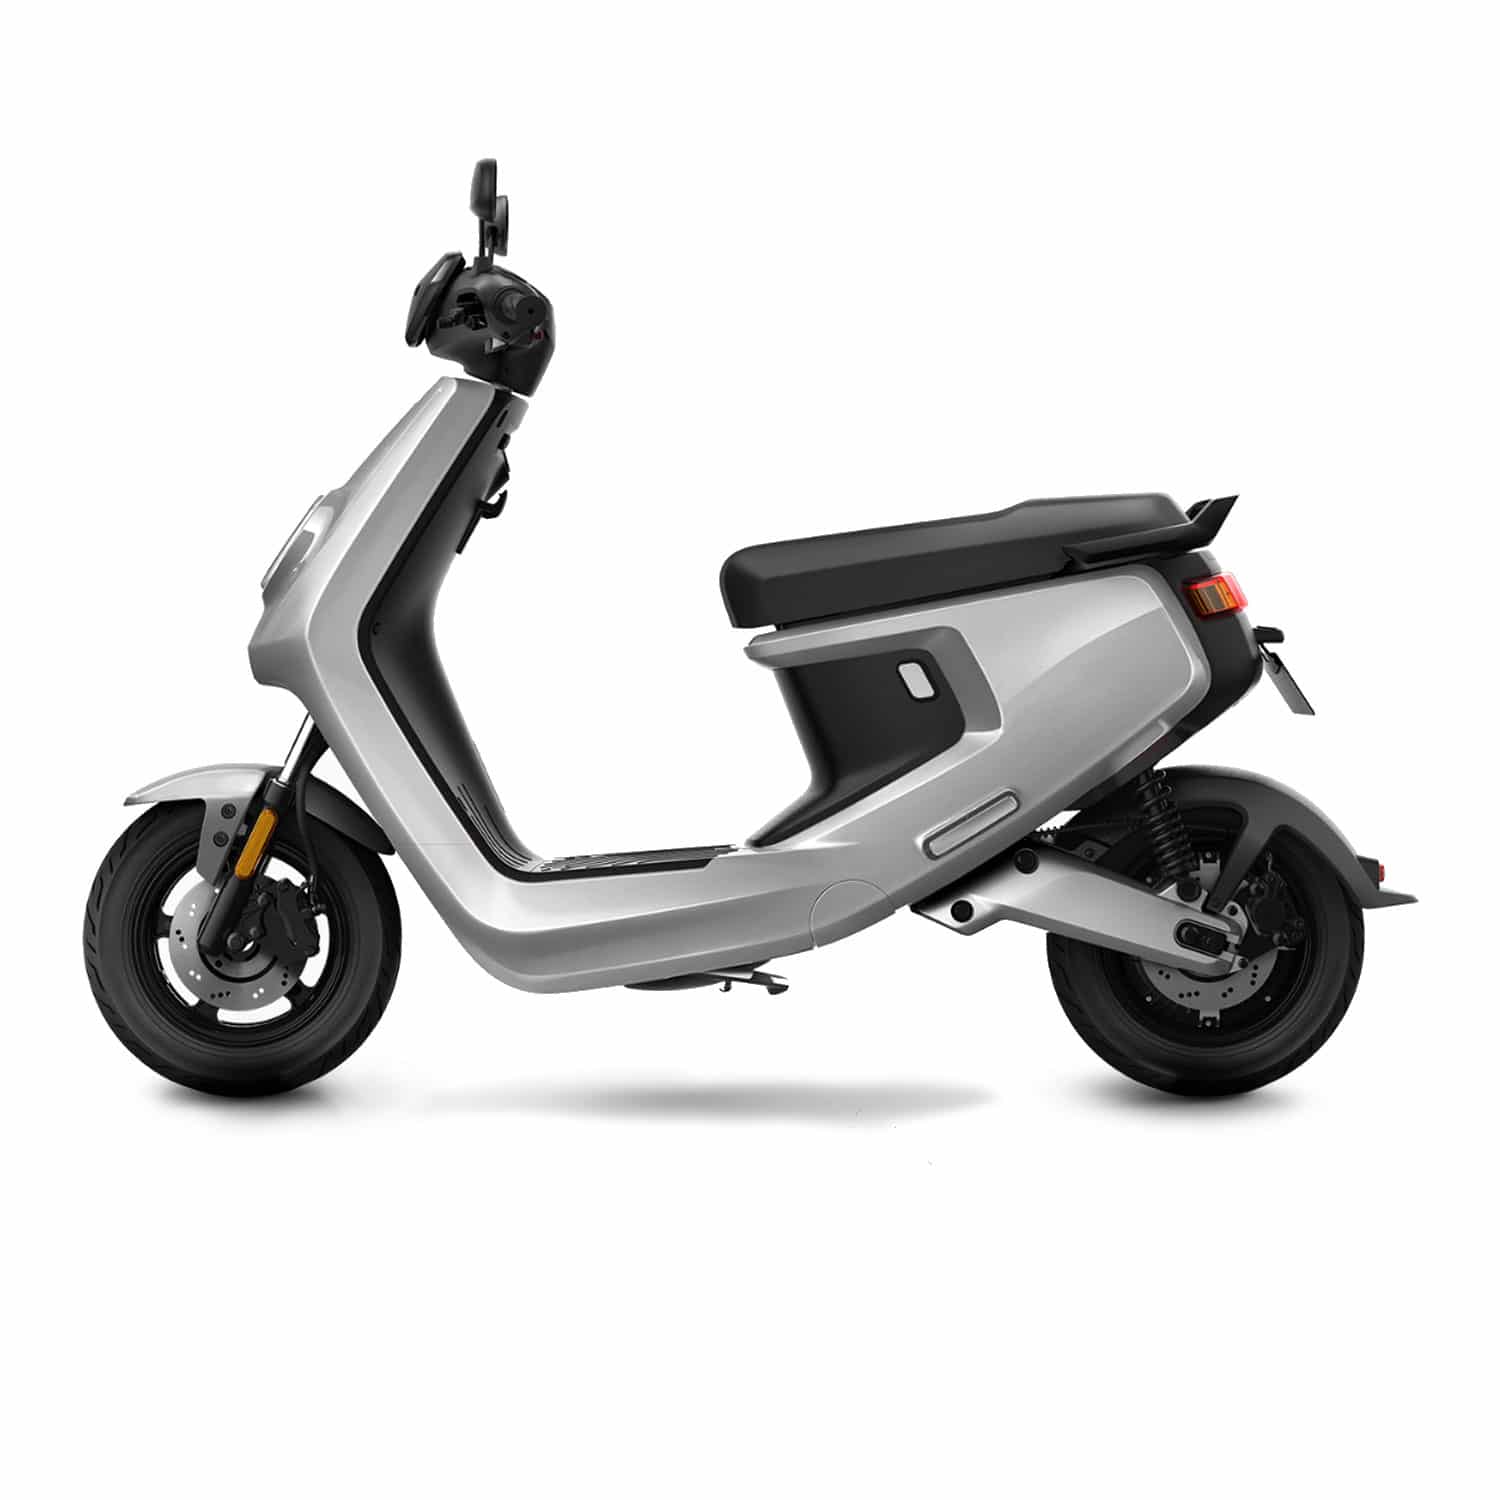 Yimi 2022 nouveau GPS Scooters électriques pour les adultes 2